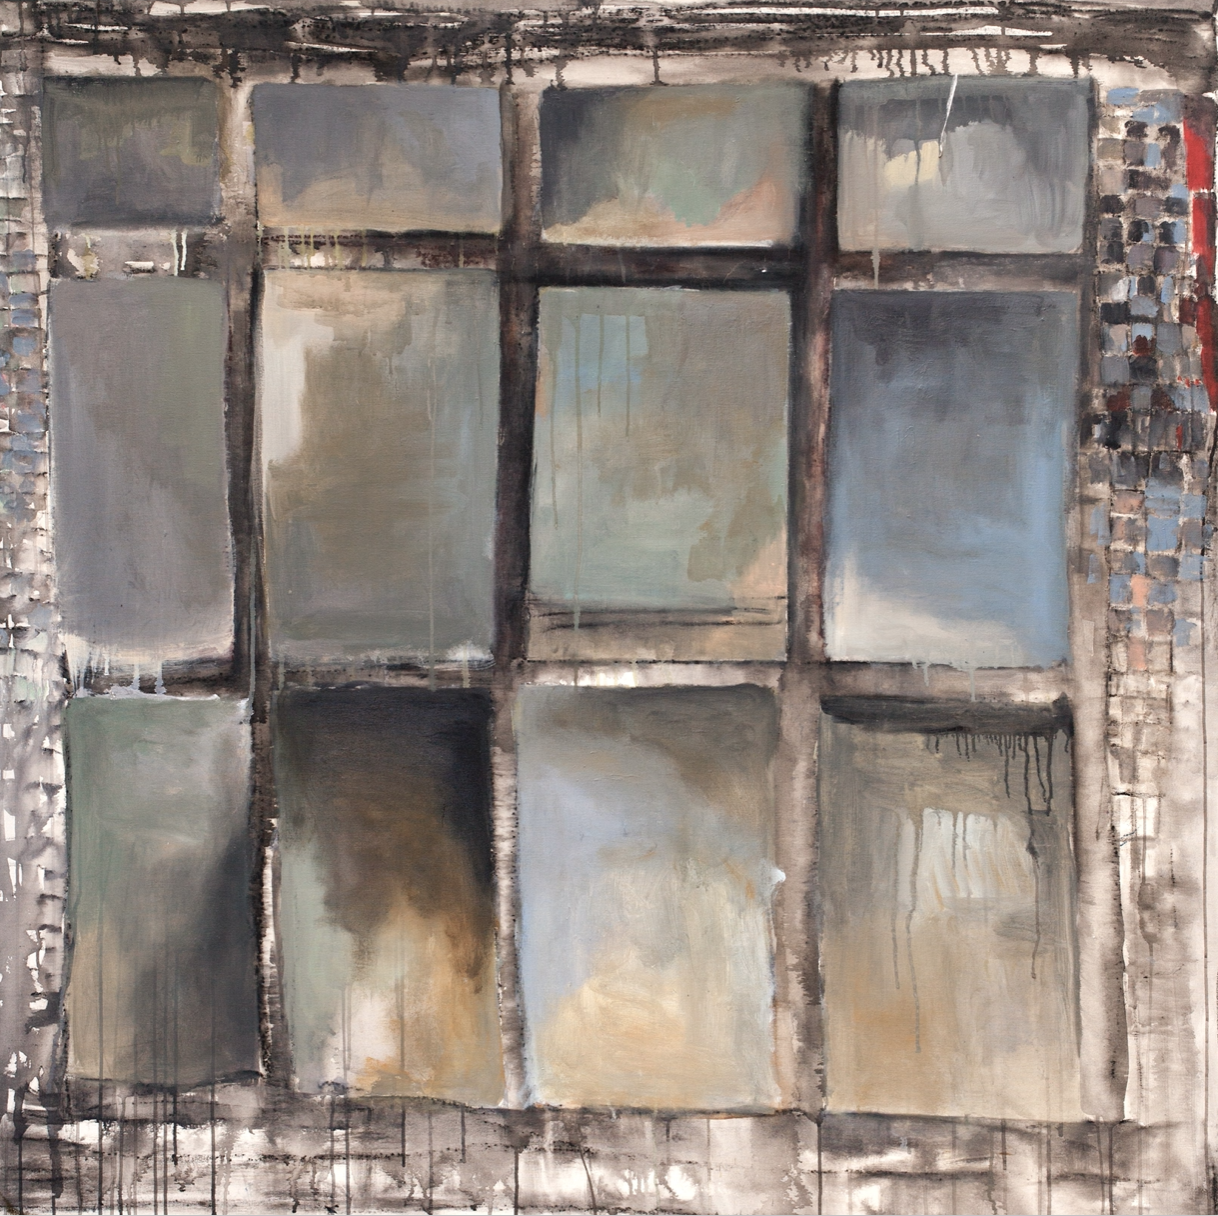 myriam zini | janela oculta serie Caminho das Perdras | 2012 | acrilica e lapis acuarelavel sobre tela |157 x 157 cm